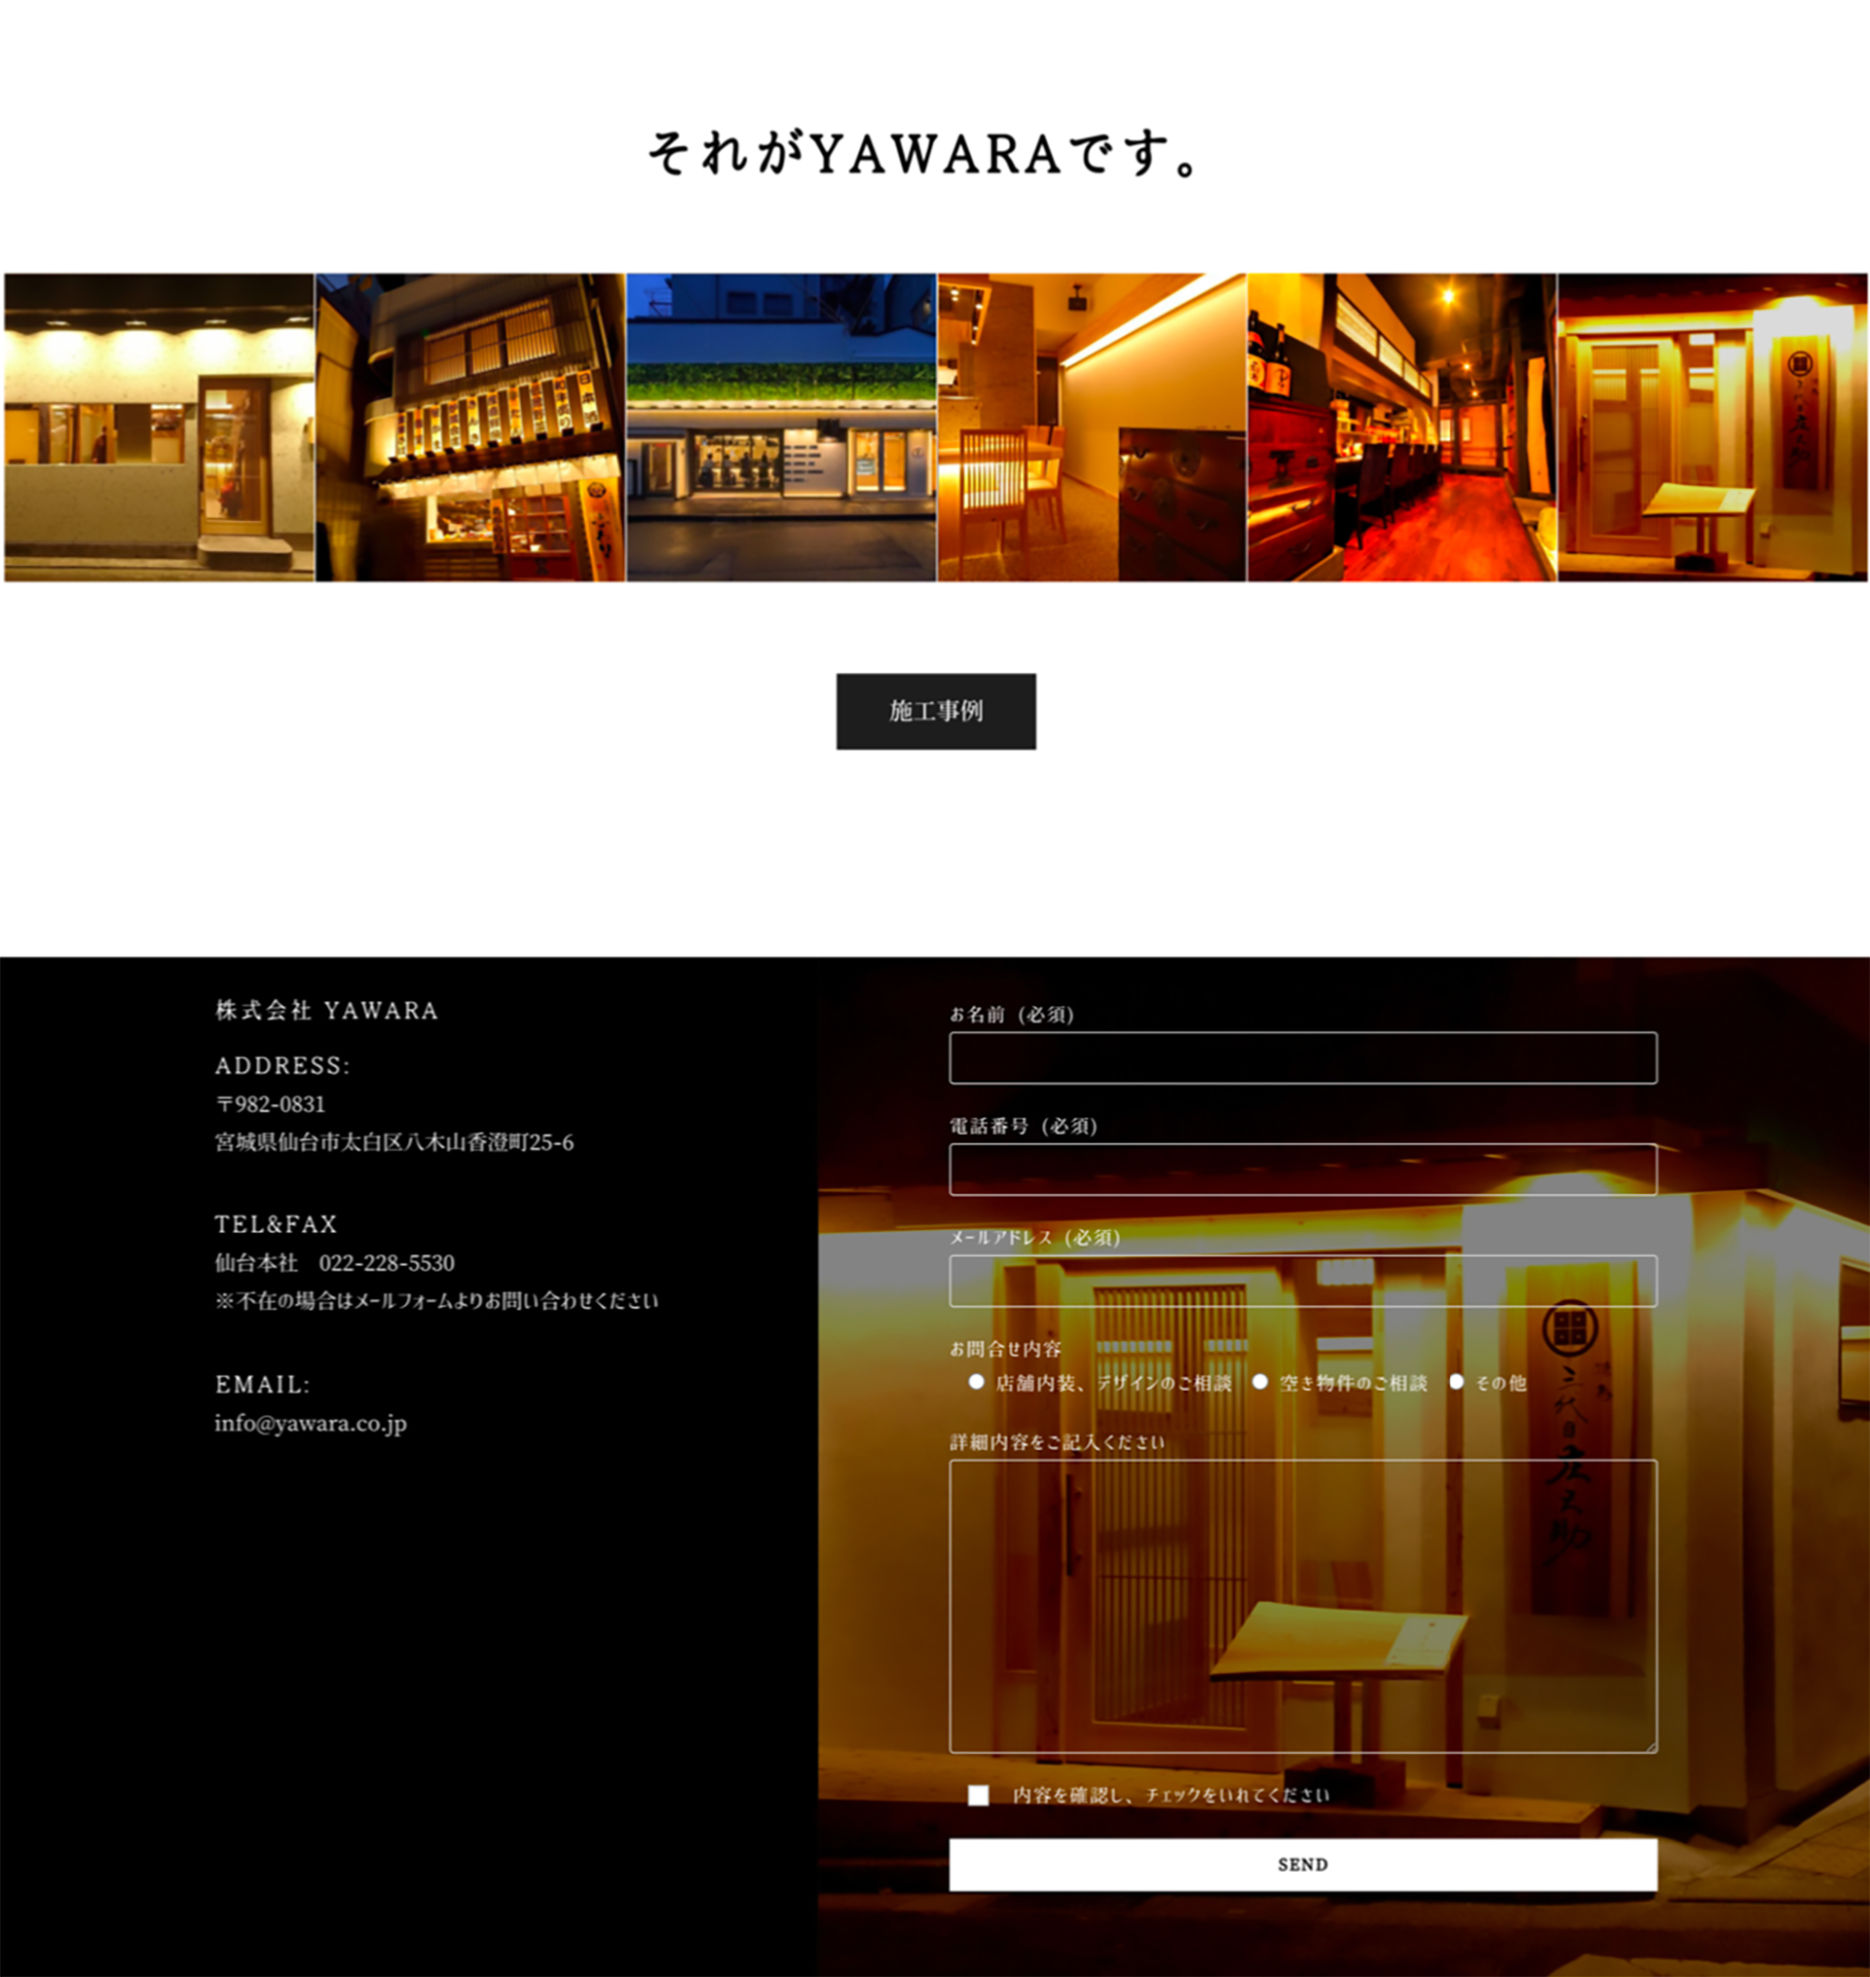 yawara3 - ホームページ制作事例。仙台市の店舗デザイン YAWARA様